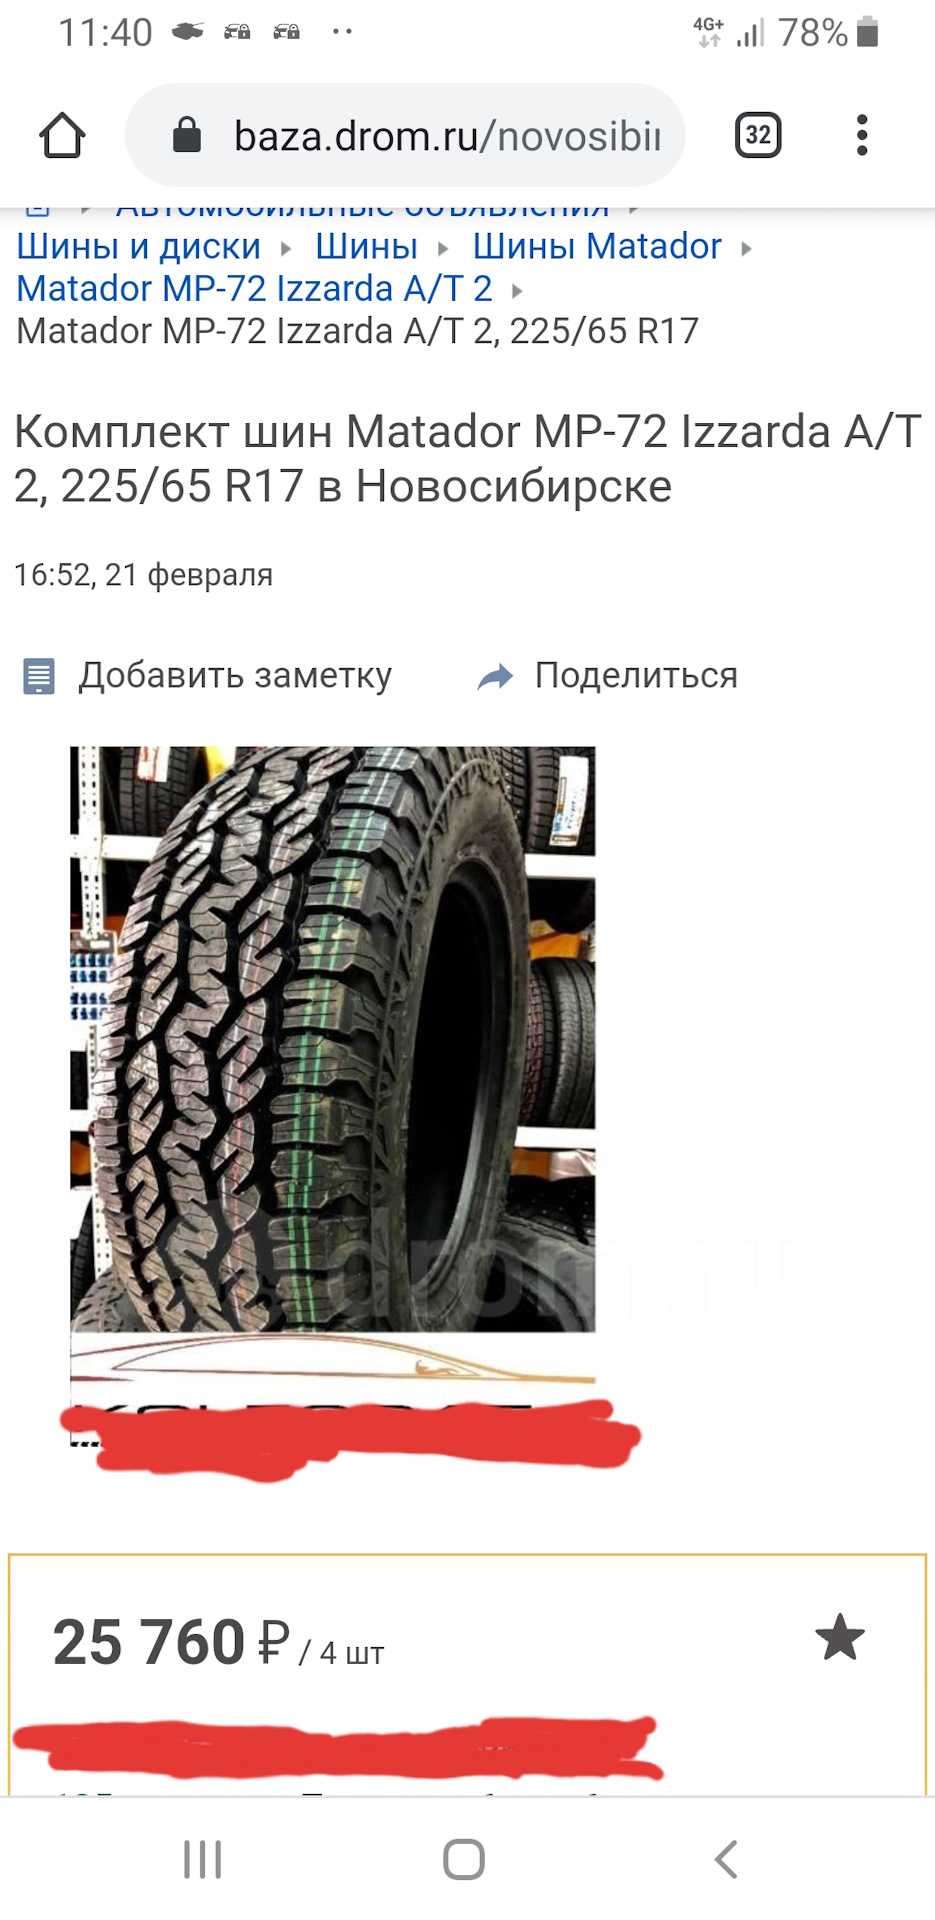 Зимняя автомобильная резина словенского производства ценится среди российских водителей, поскольку обладает неплохим качеством и более чем демократичной ценой